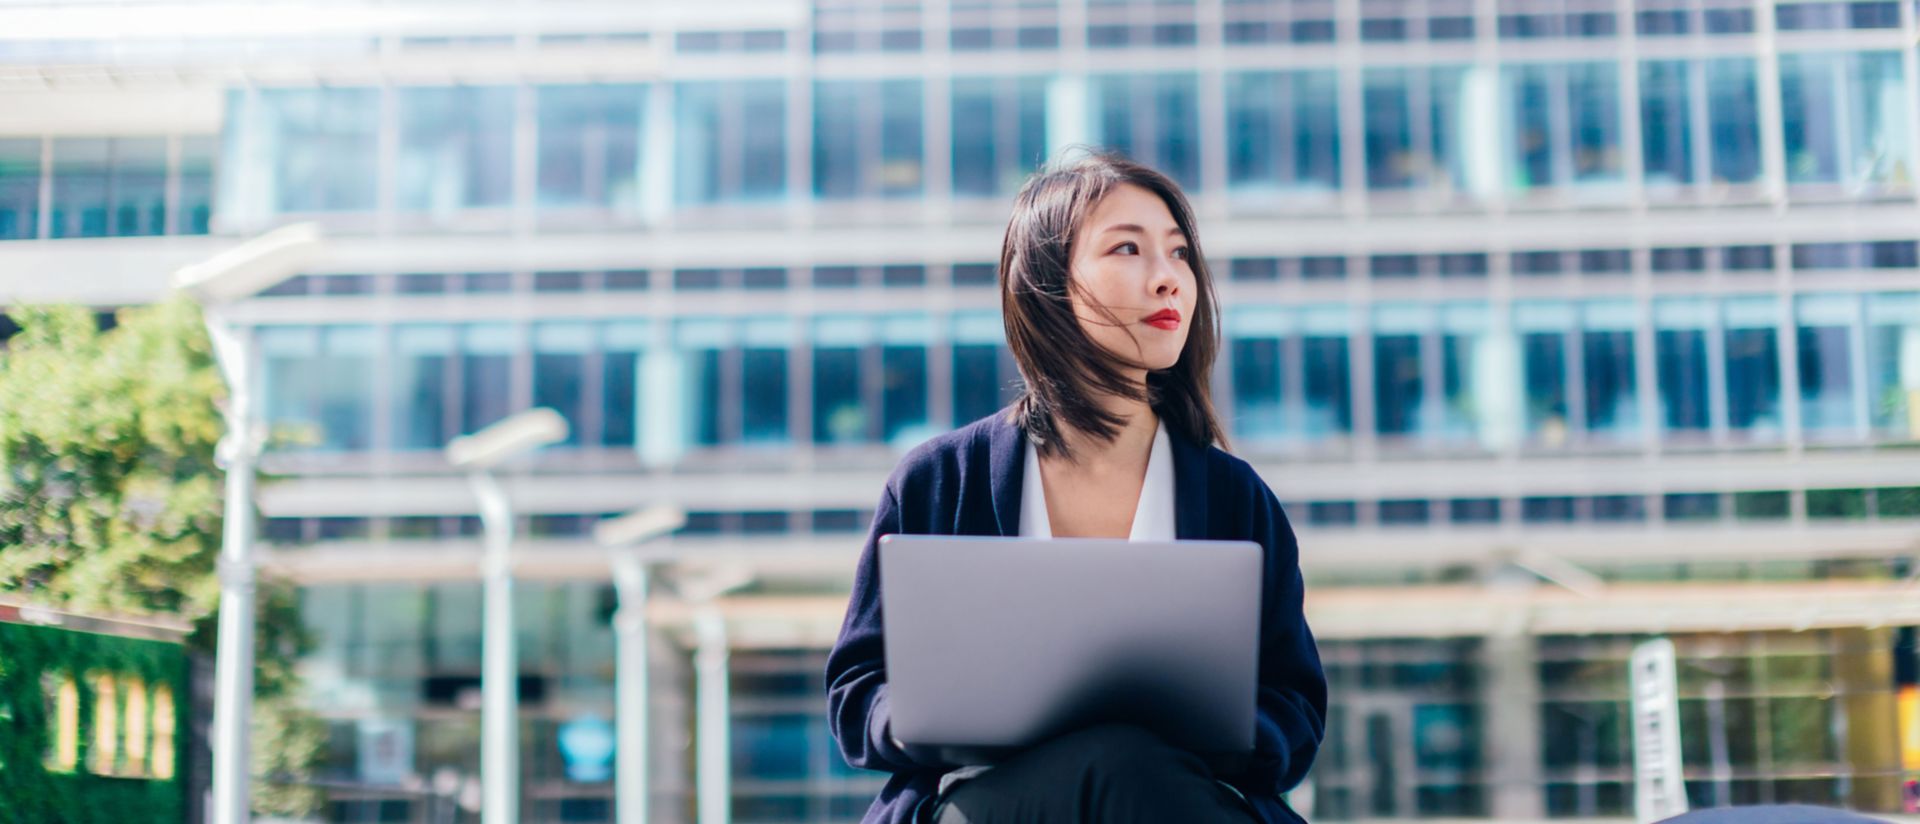 Afbeelding van een vrouw die voor een gebouw achter een laptop zit